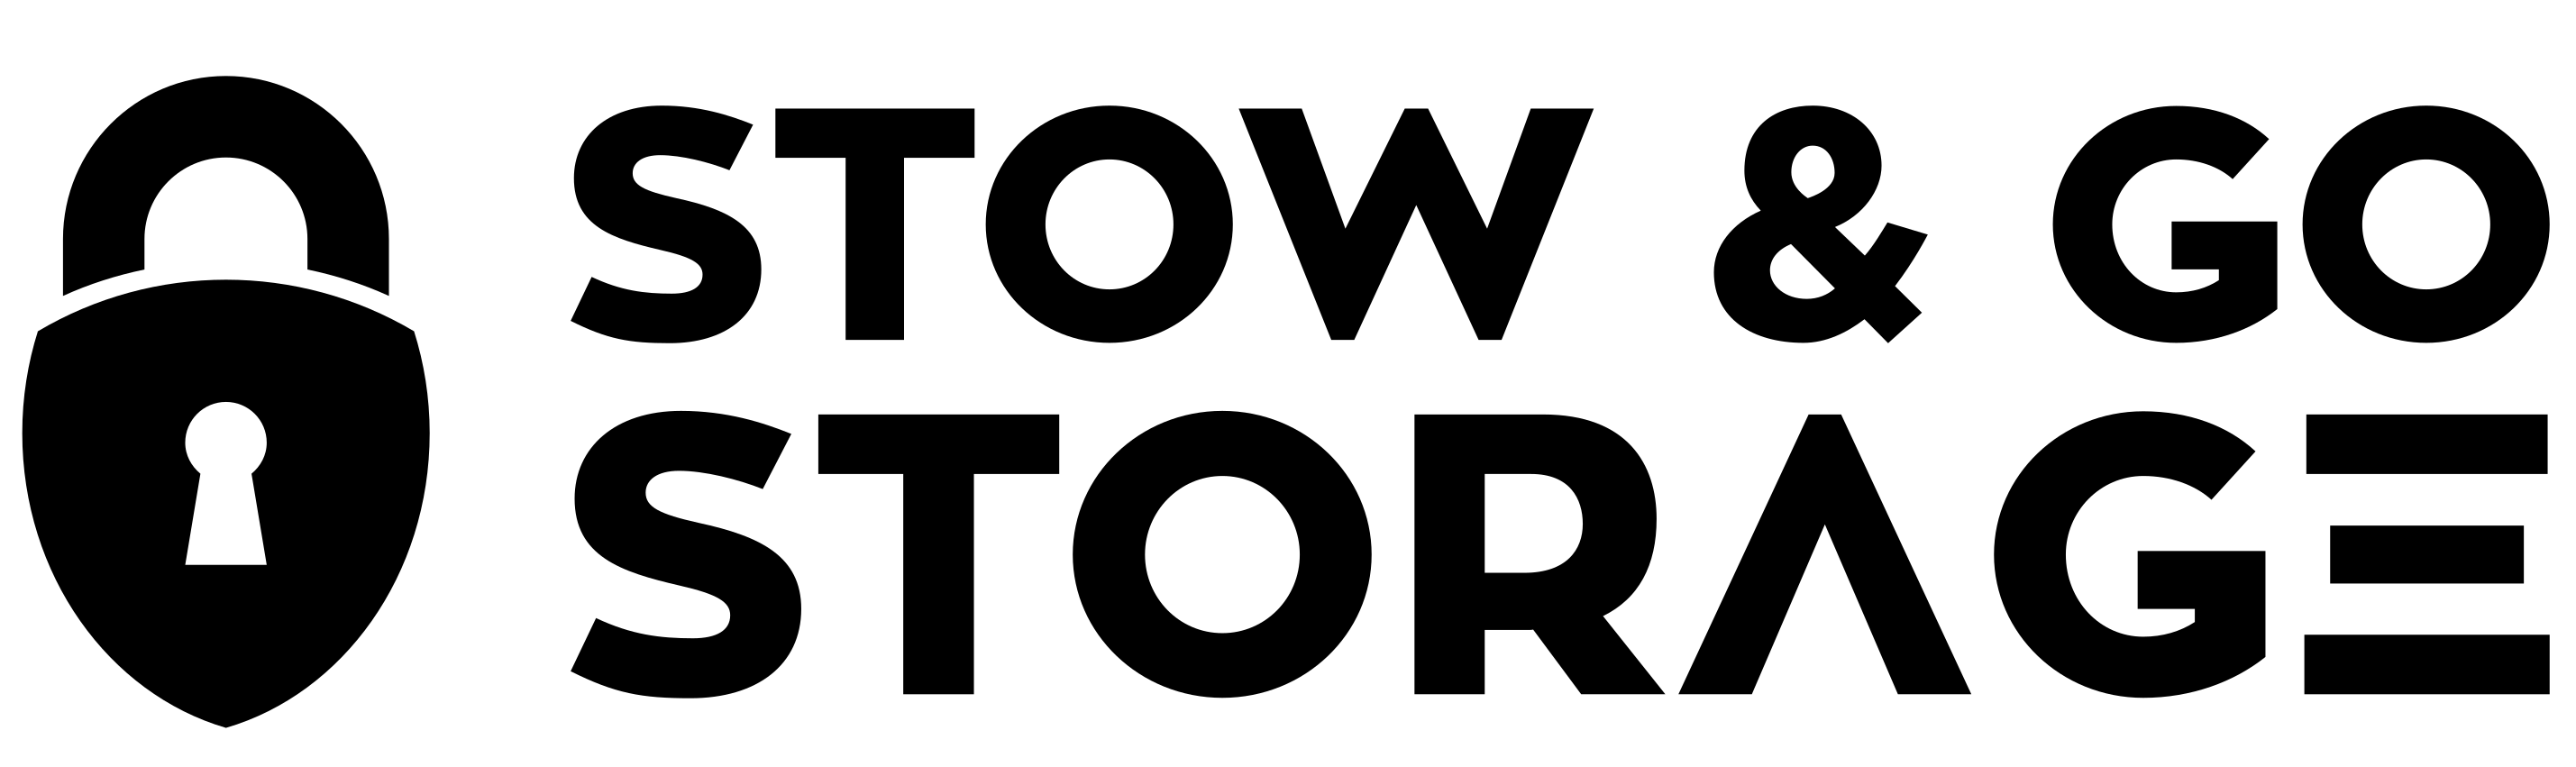 Stow & Go Storage Logo